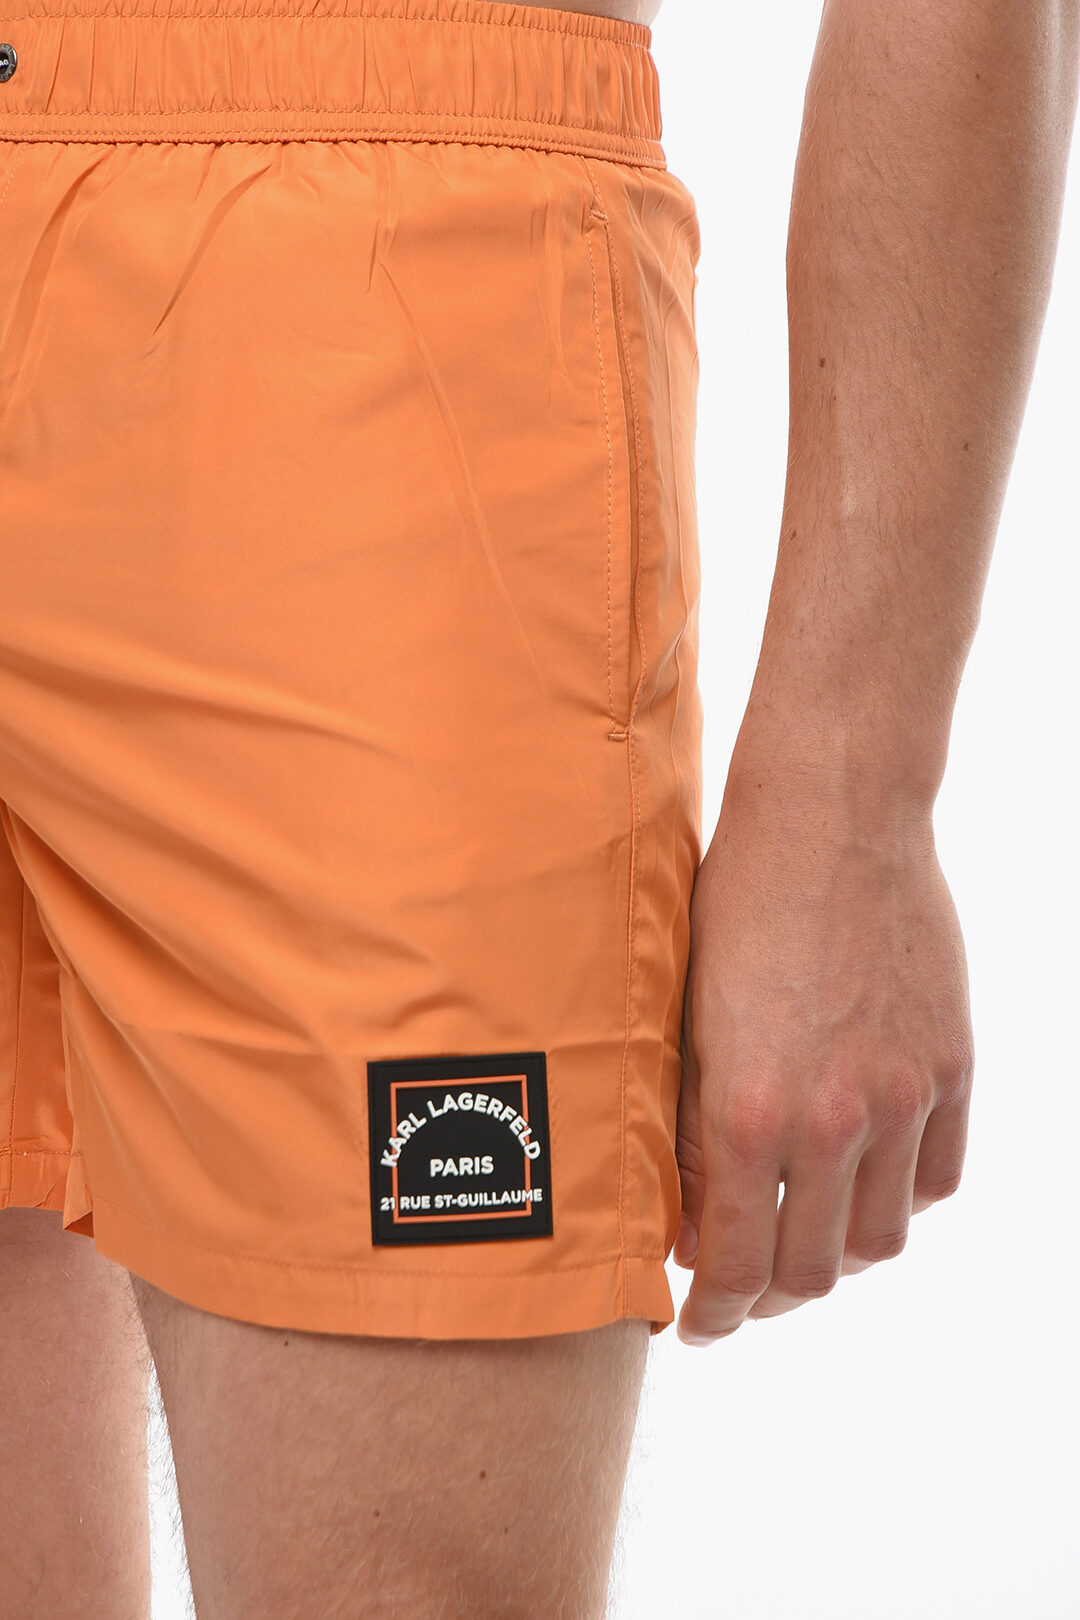 Rue st-guillame einfarbig 3-pocket orange boxer schwimmanzug